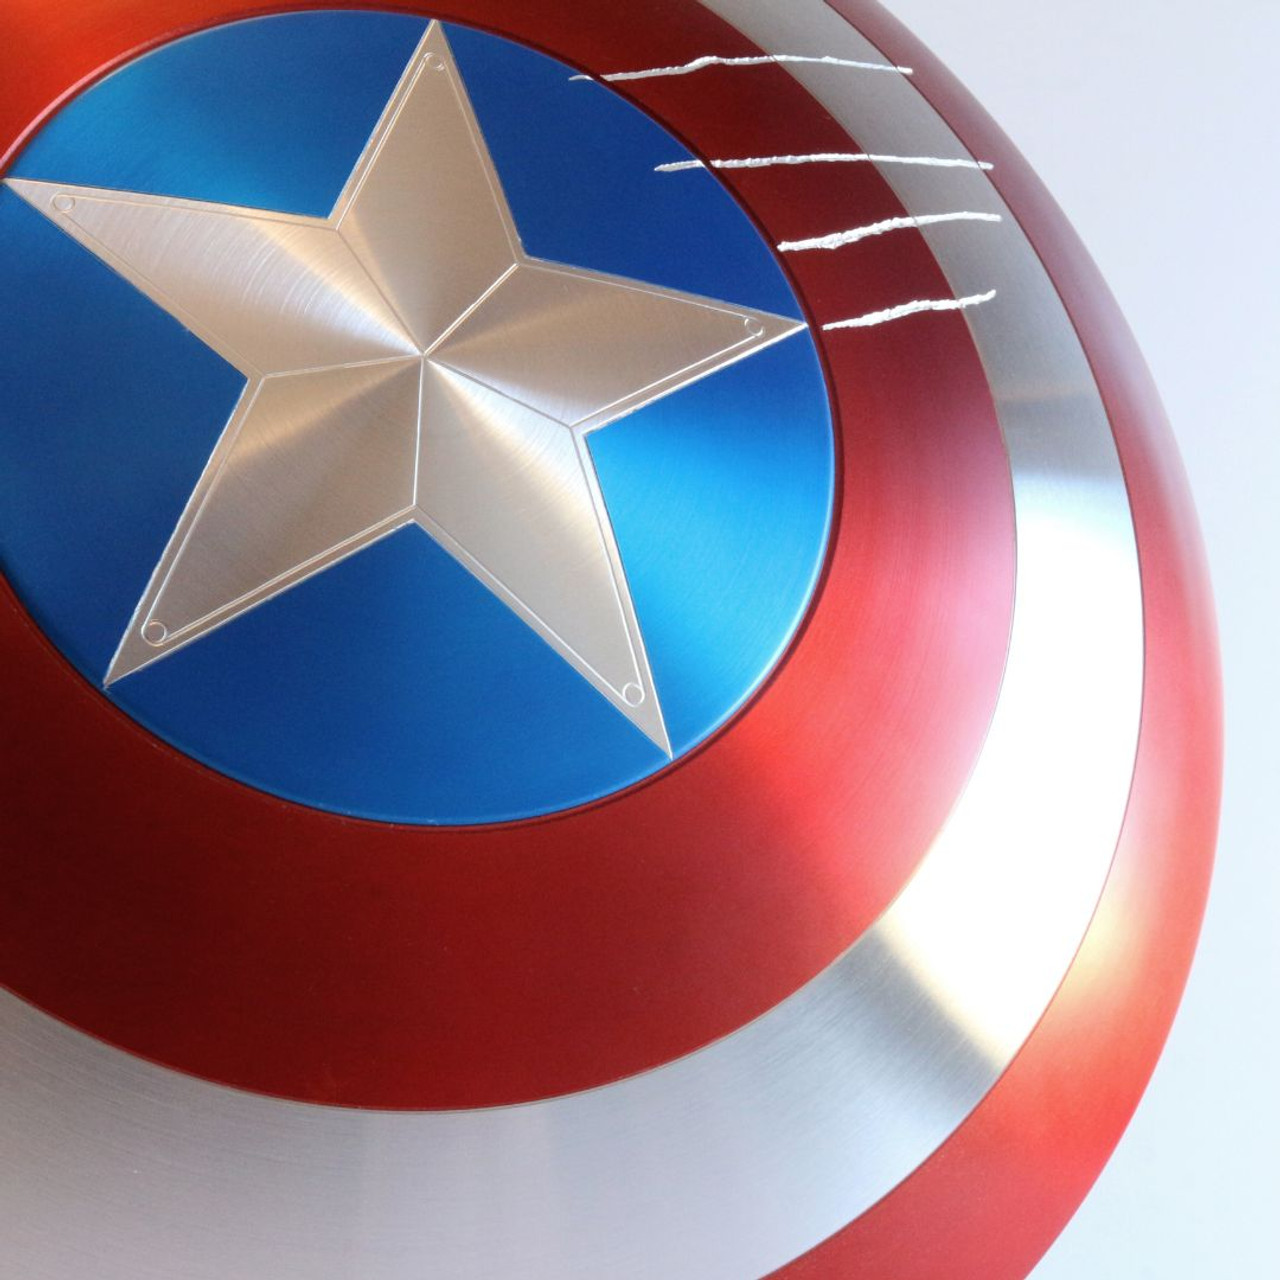 Captain America Shield Replica